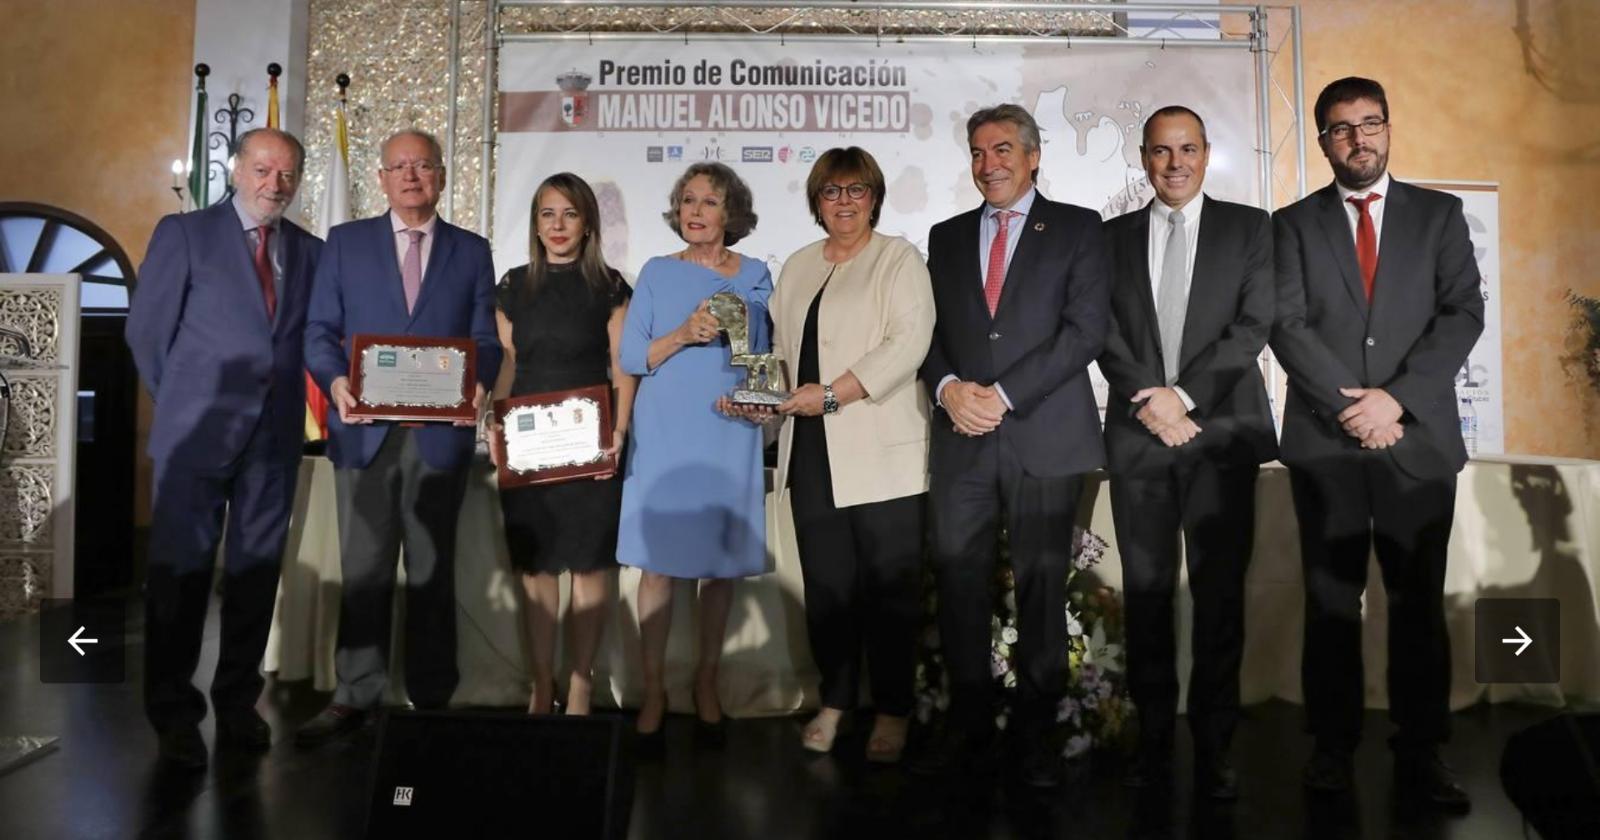 La FCom Mención Especial en el Premio de Comunicación Manuel Alonso Vicedo